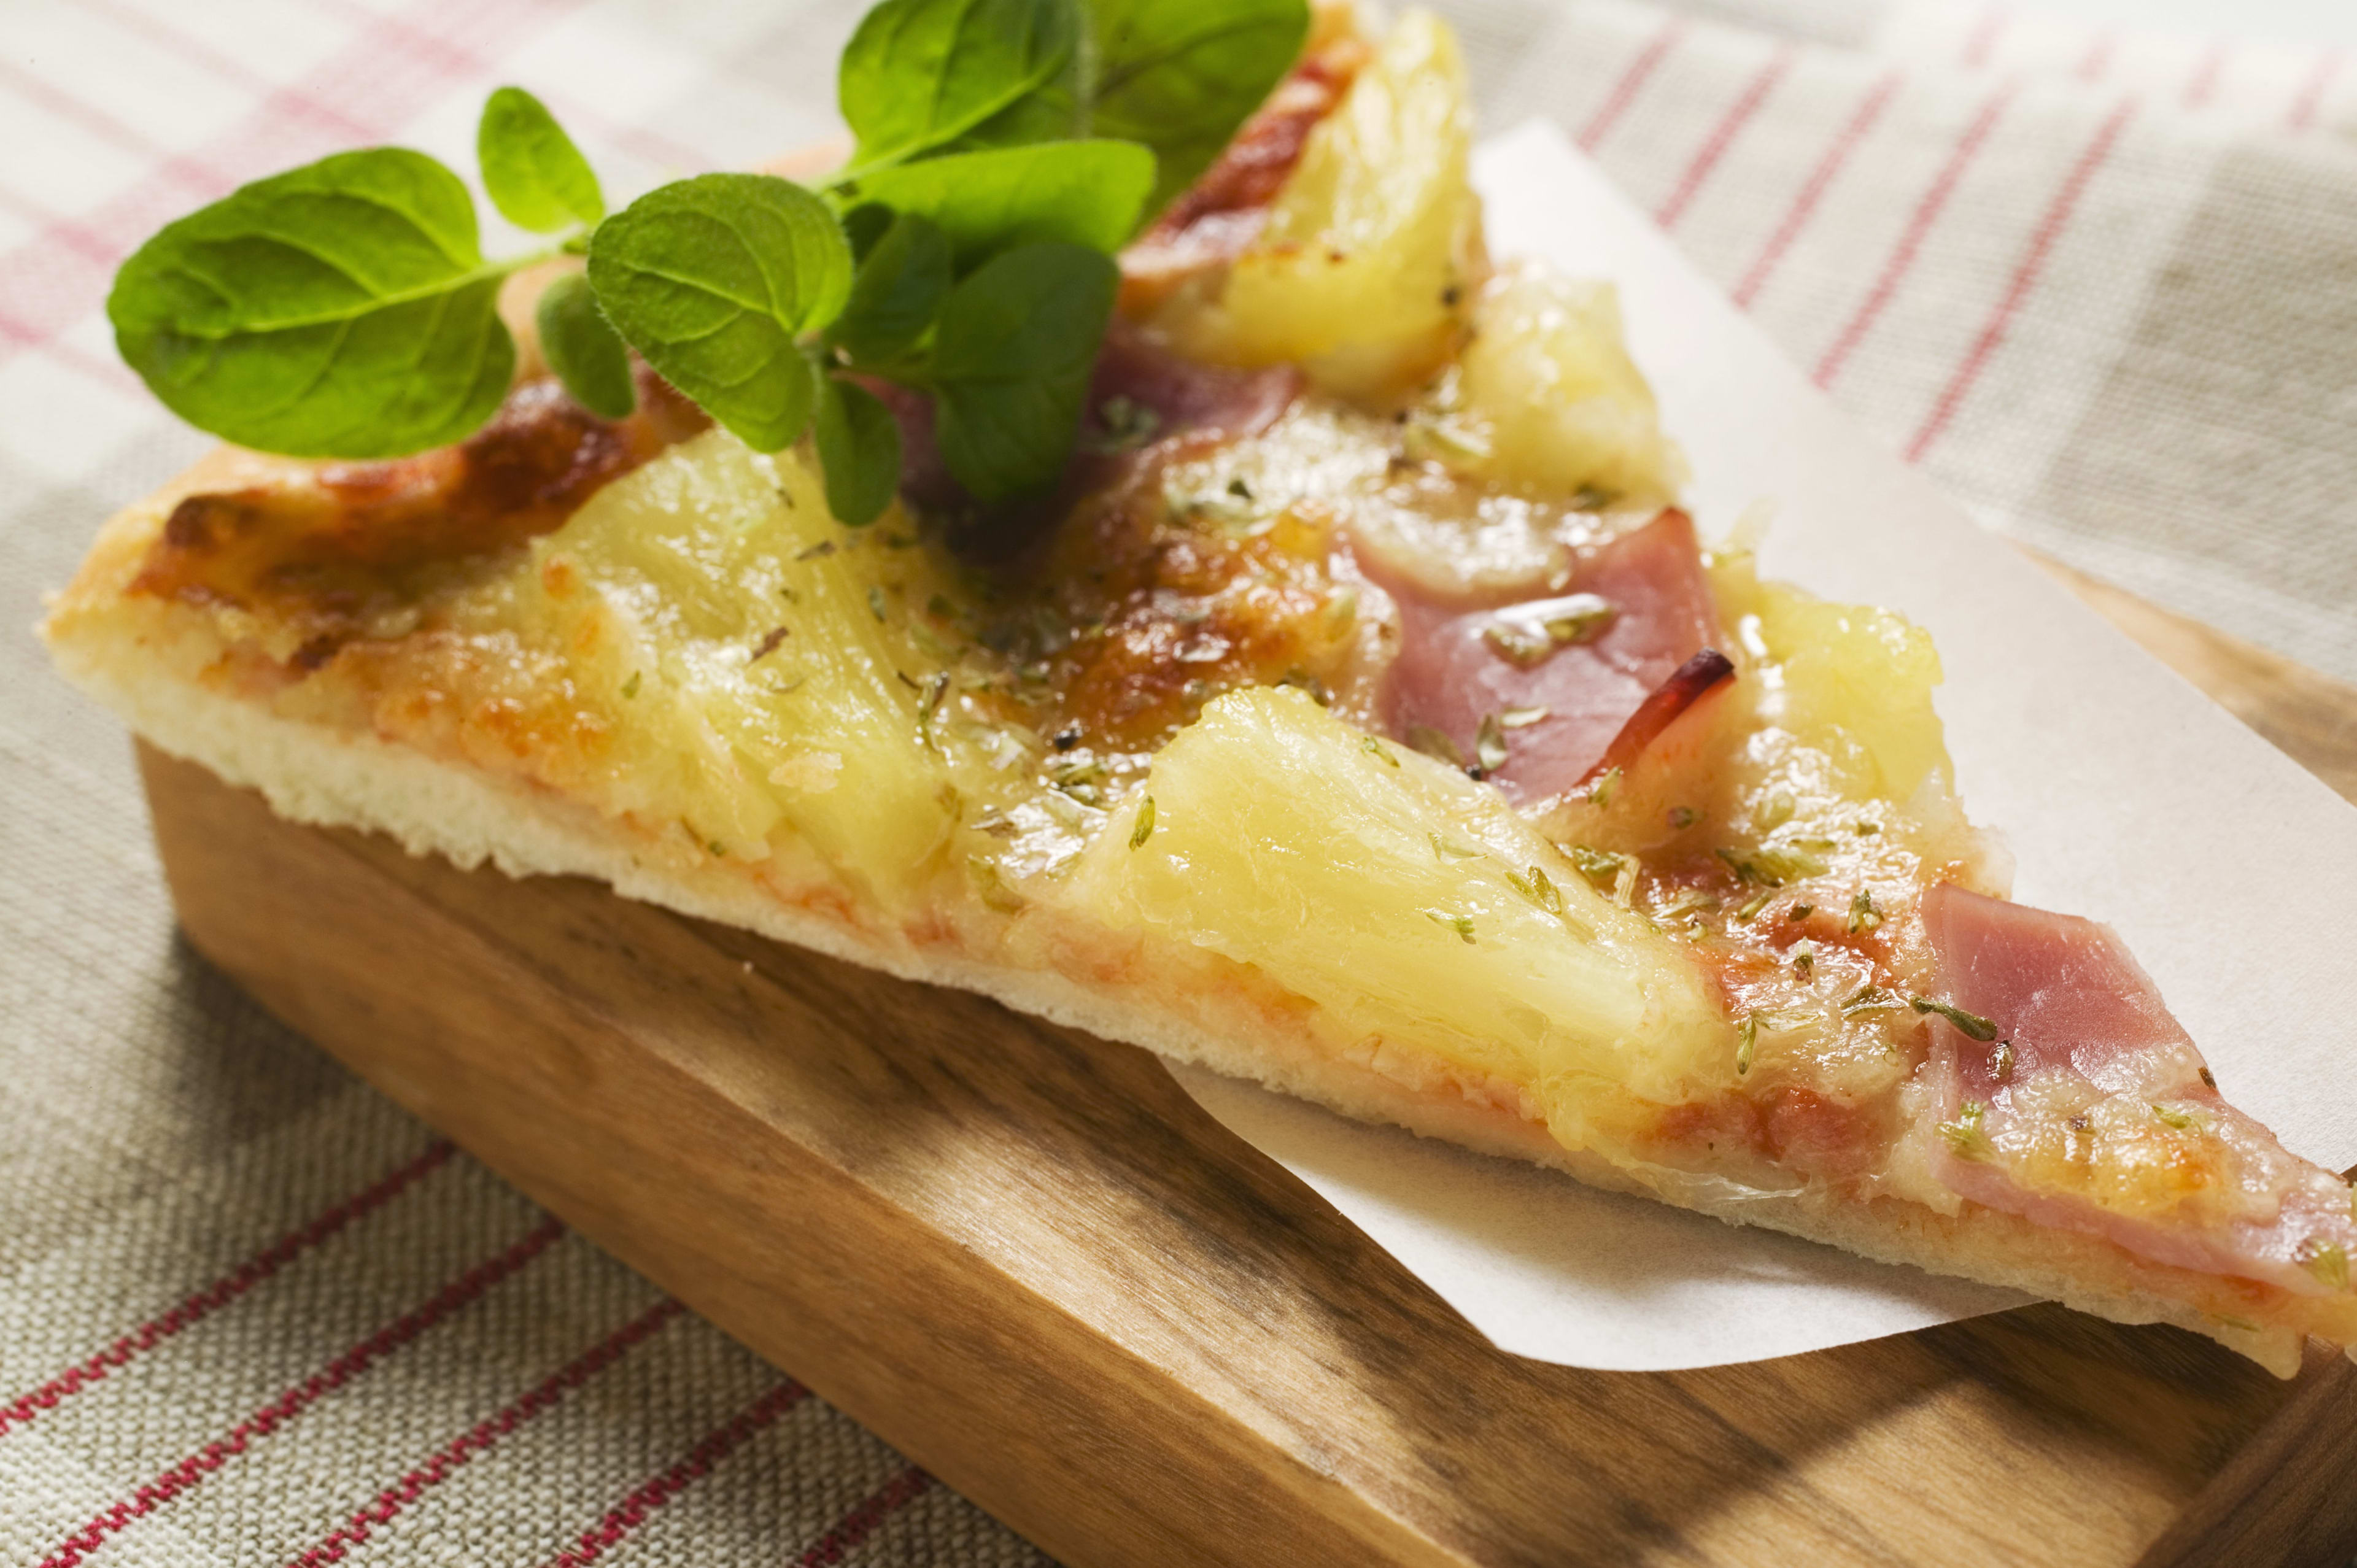 Zwolse pizzeria klaar met pizza hawaï: '50 euro en ananas mag je er zelf op doen'